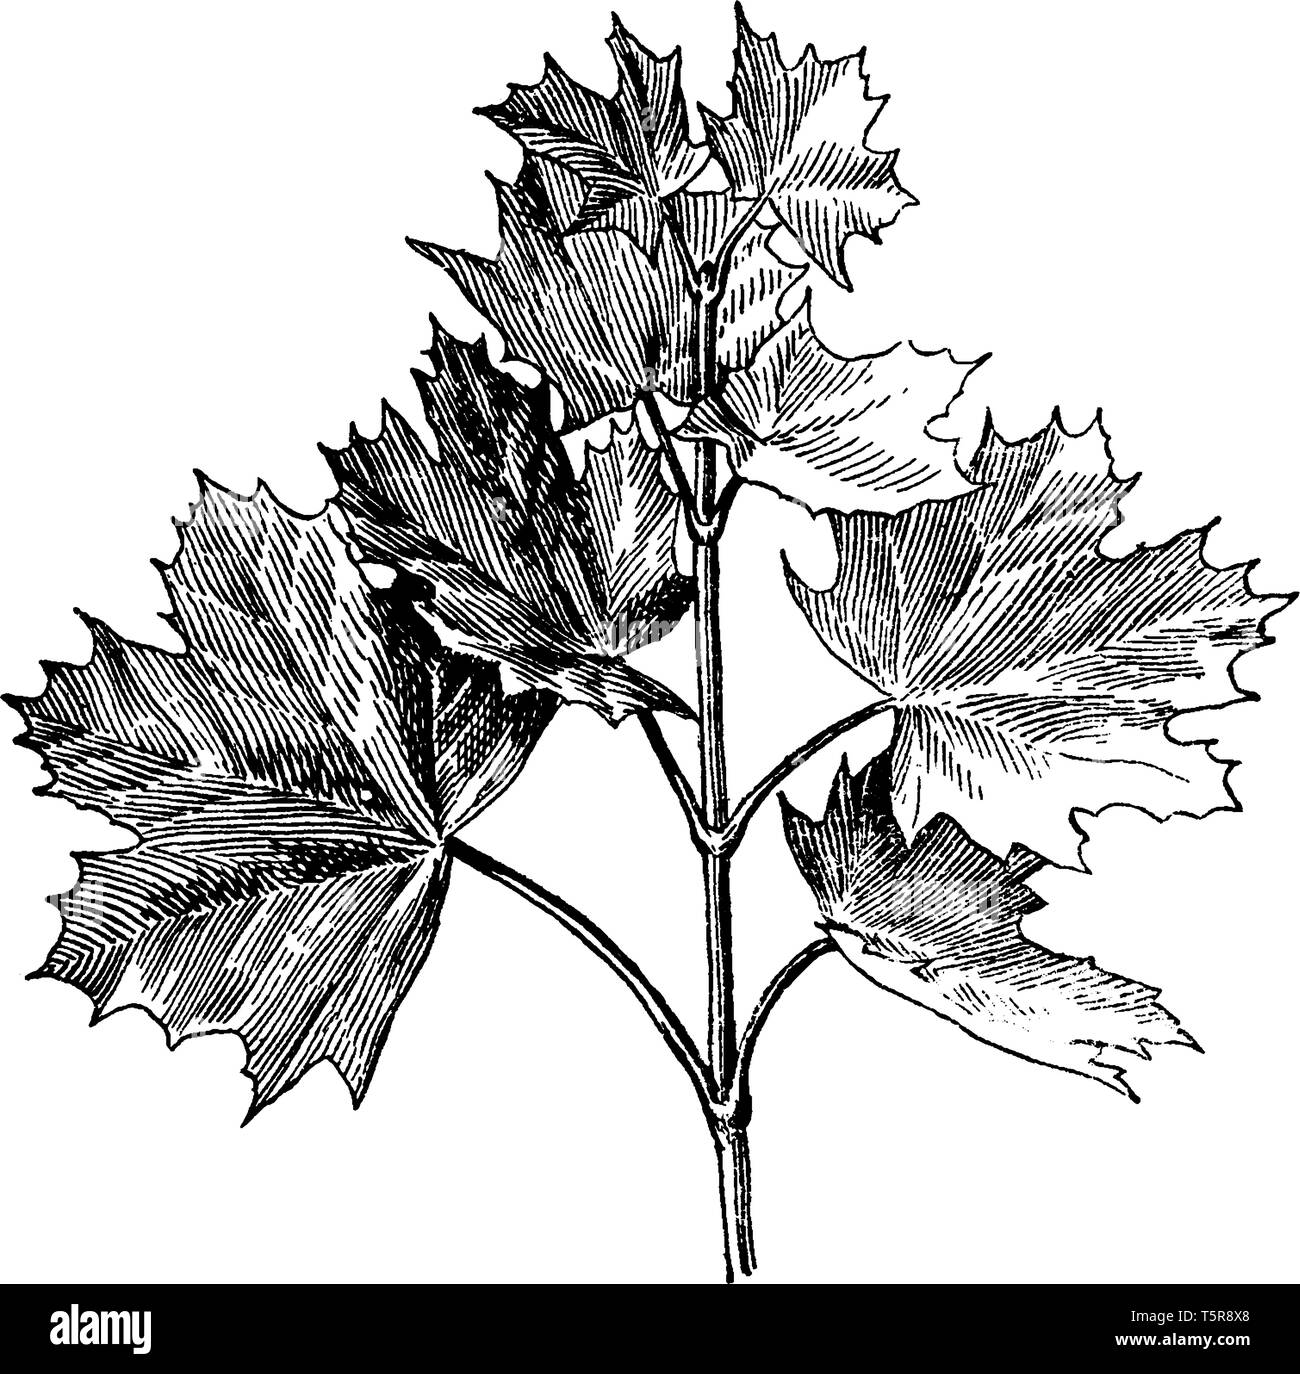 Questo è il ramo di Norvegia acero e anche comunemente noto come Acer platanoides, vintage disegno della linea di incisione o illustrazione. Illustrazione Vettoriale